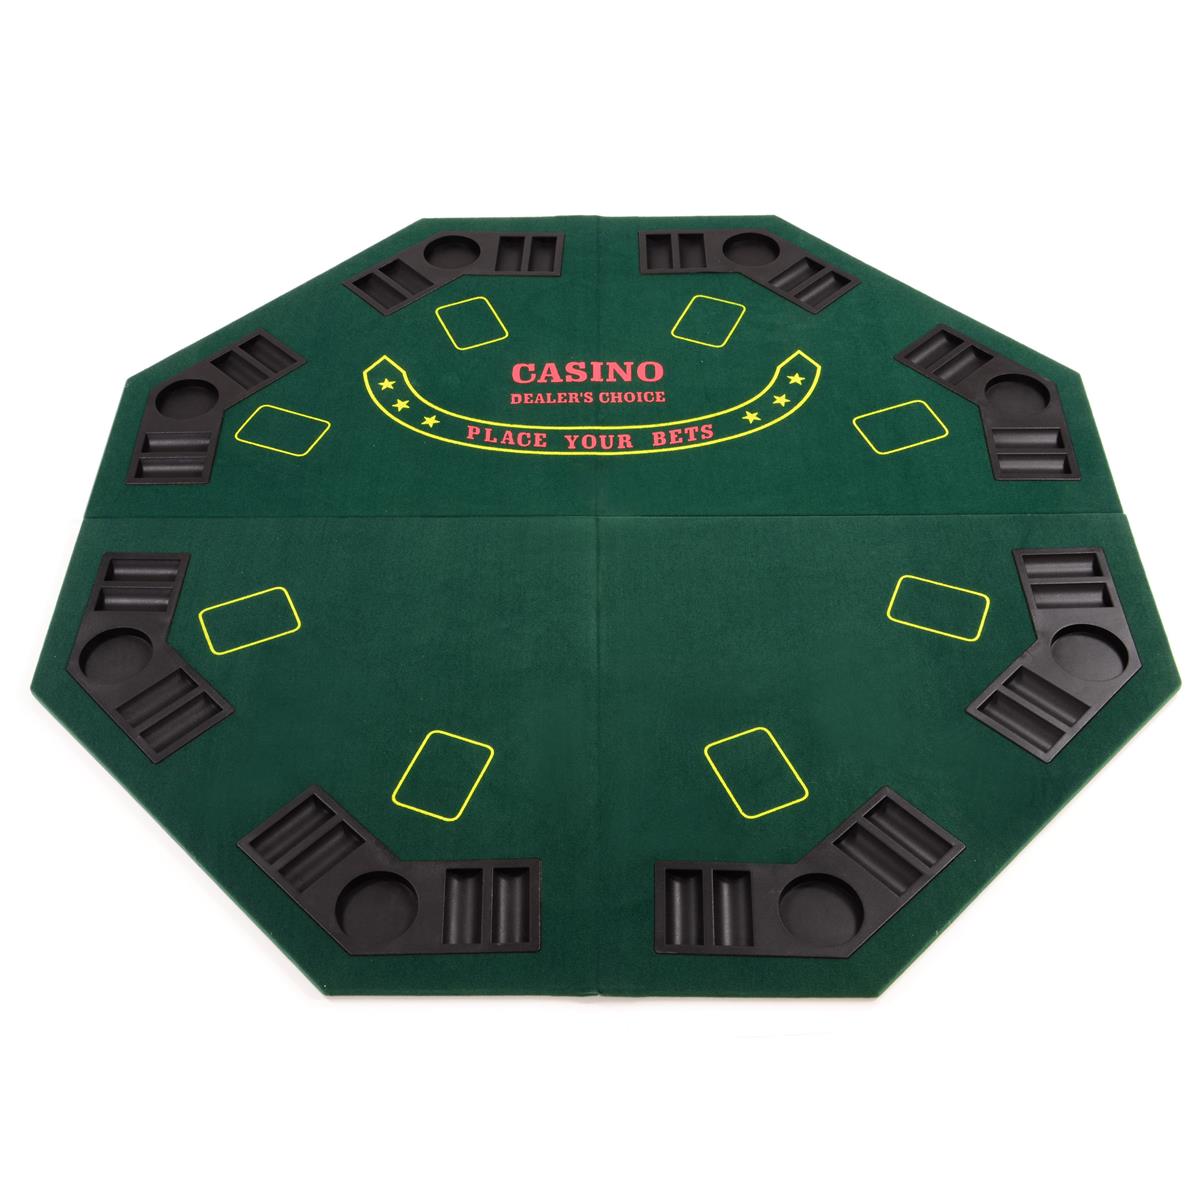 Faltbare Tischauflage Pokertisch Casino Pokerauflage für 8 Spieler 120 x 120 cm